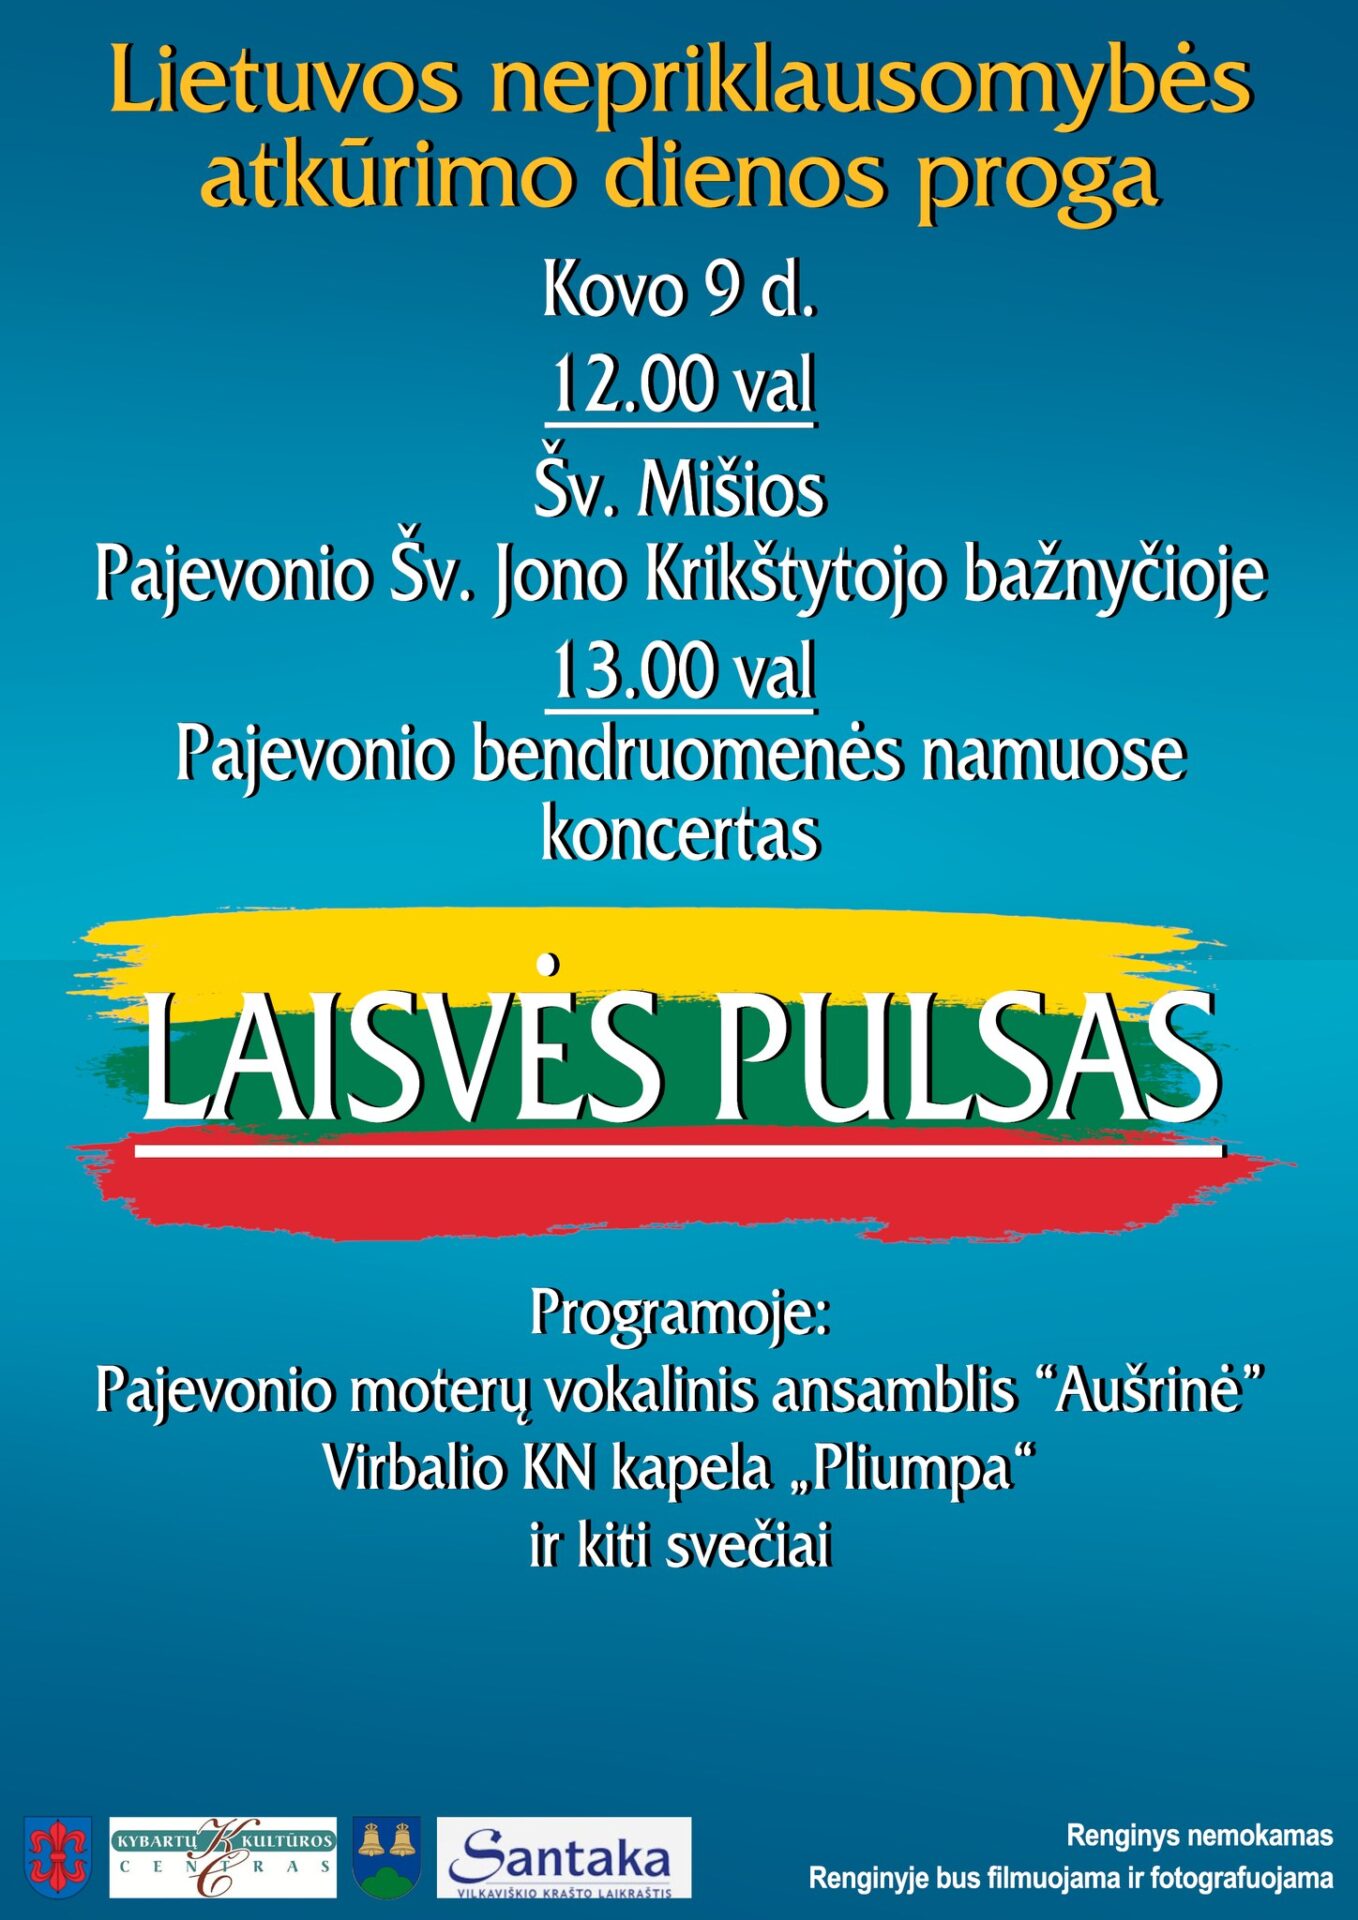 Lietuvos Nepriklausomybės atkūrimo dienos minėjimas Pajevony